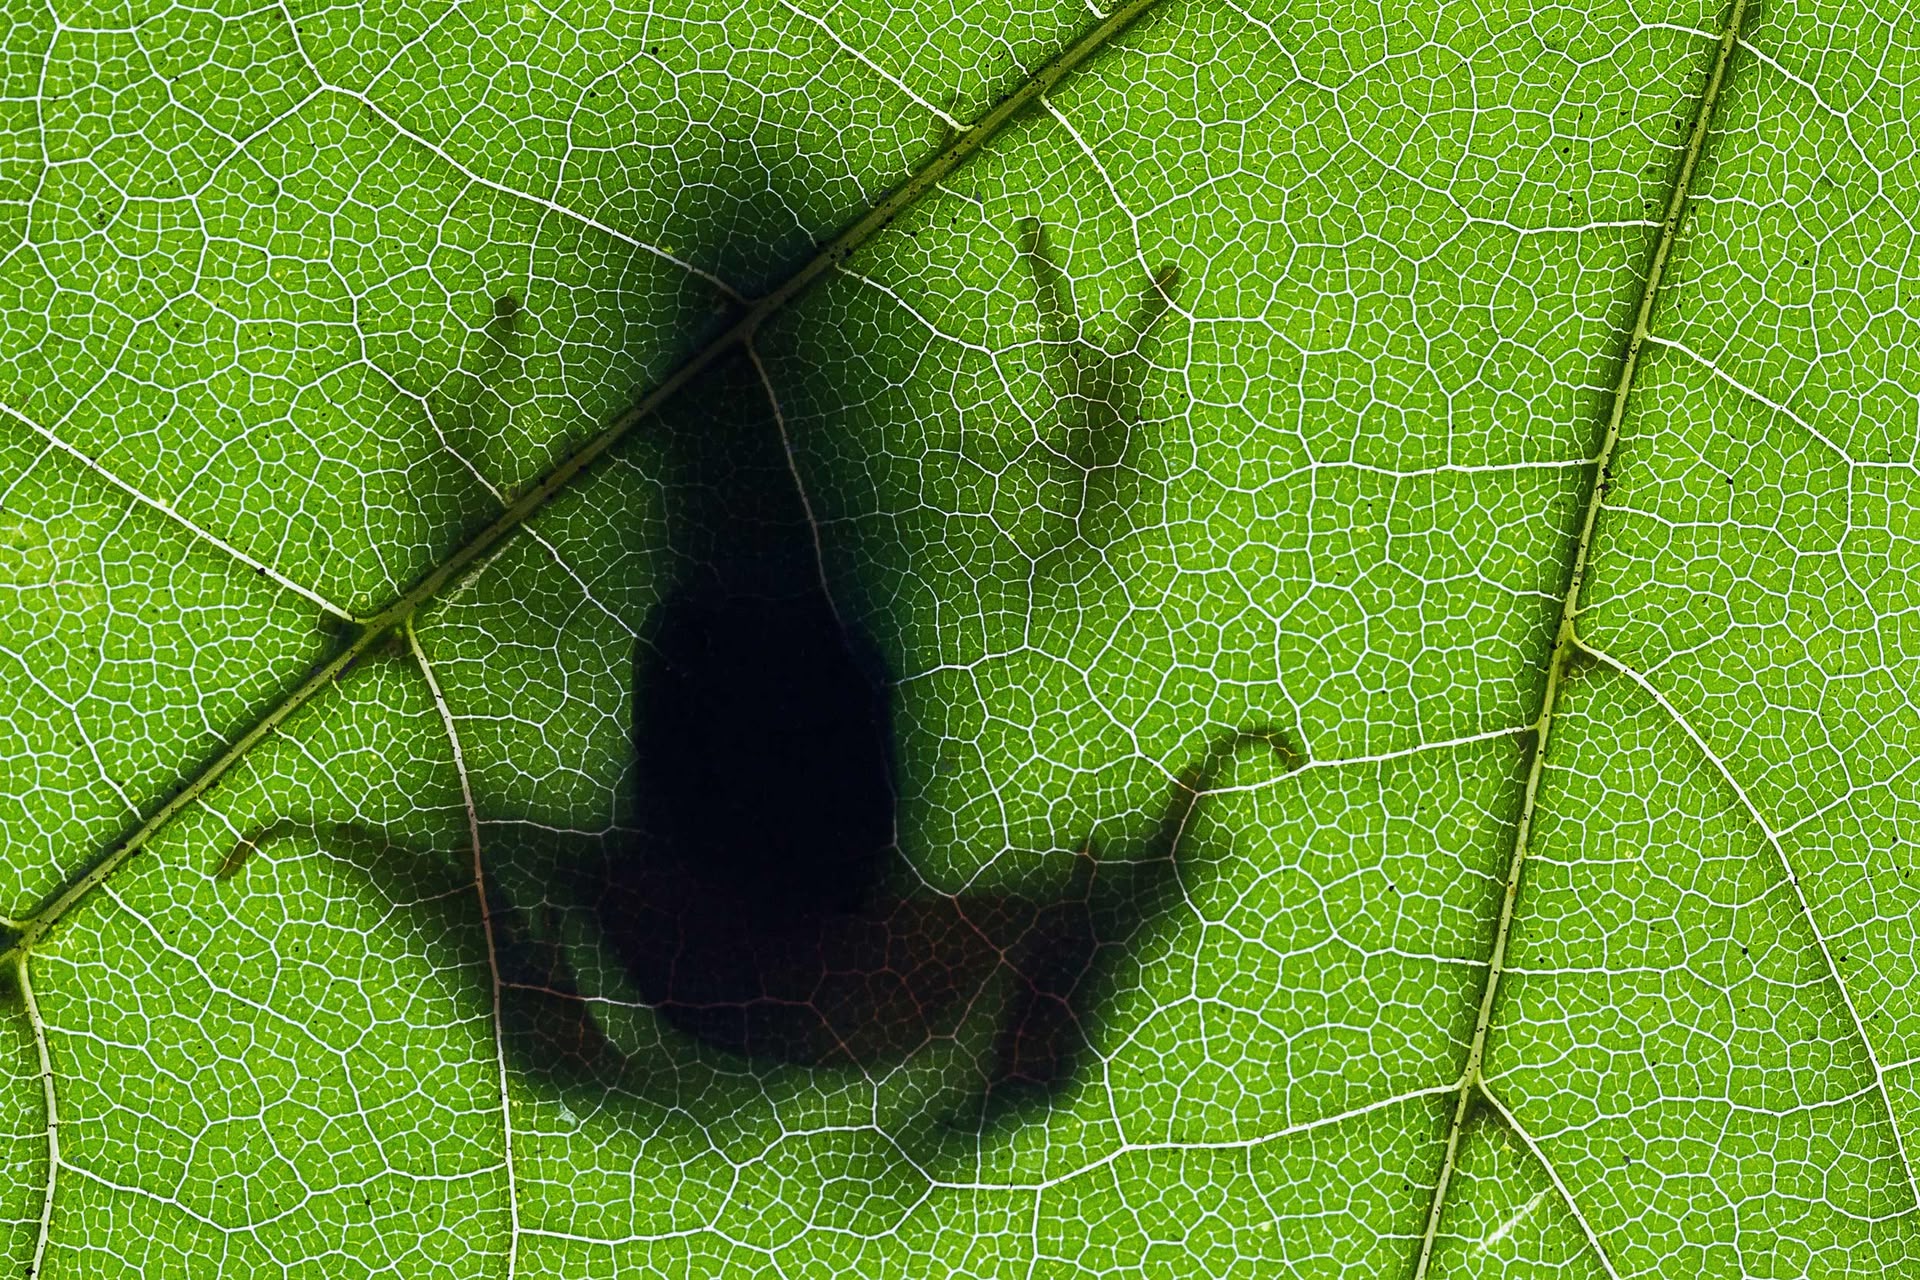 Schatten eines Frosches, der von unten durch ein grünes Blatt fotografiert wurde